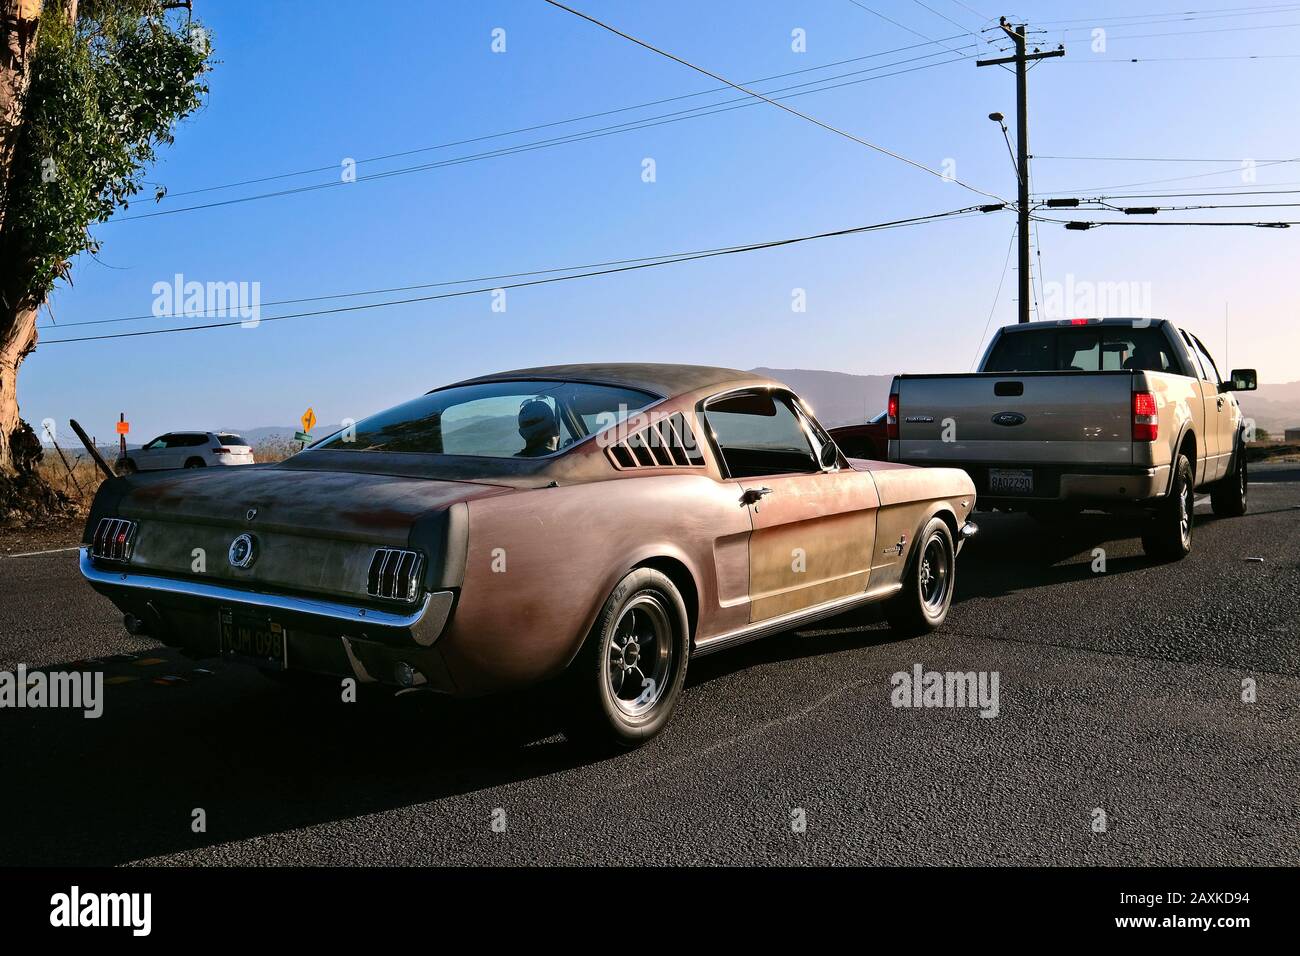 Rusty Ford Mustang Fastback sur l'autoroute Lakeville, Petaluma, Californie, États-Unis Banque D'Images